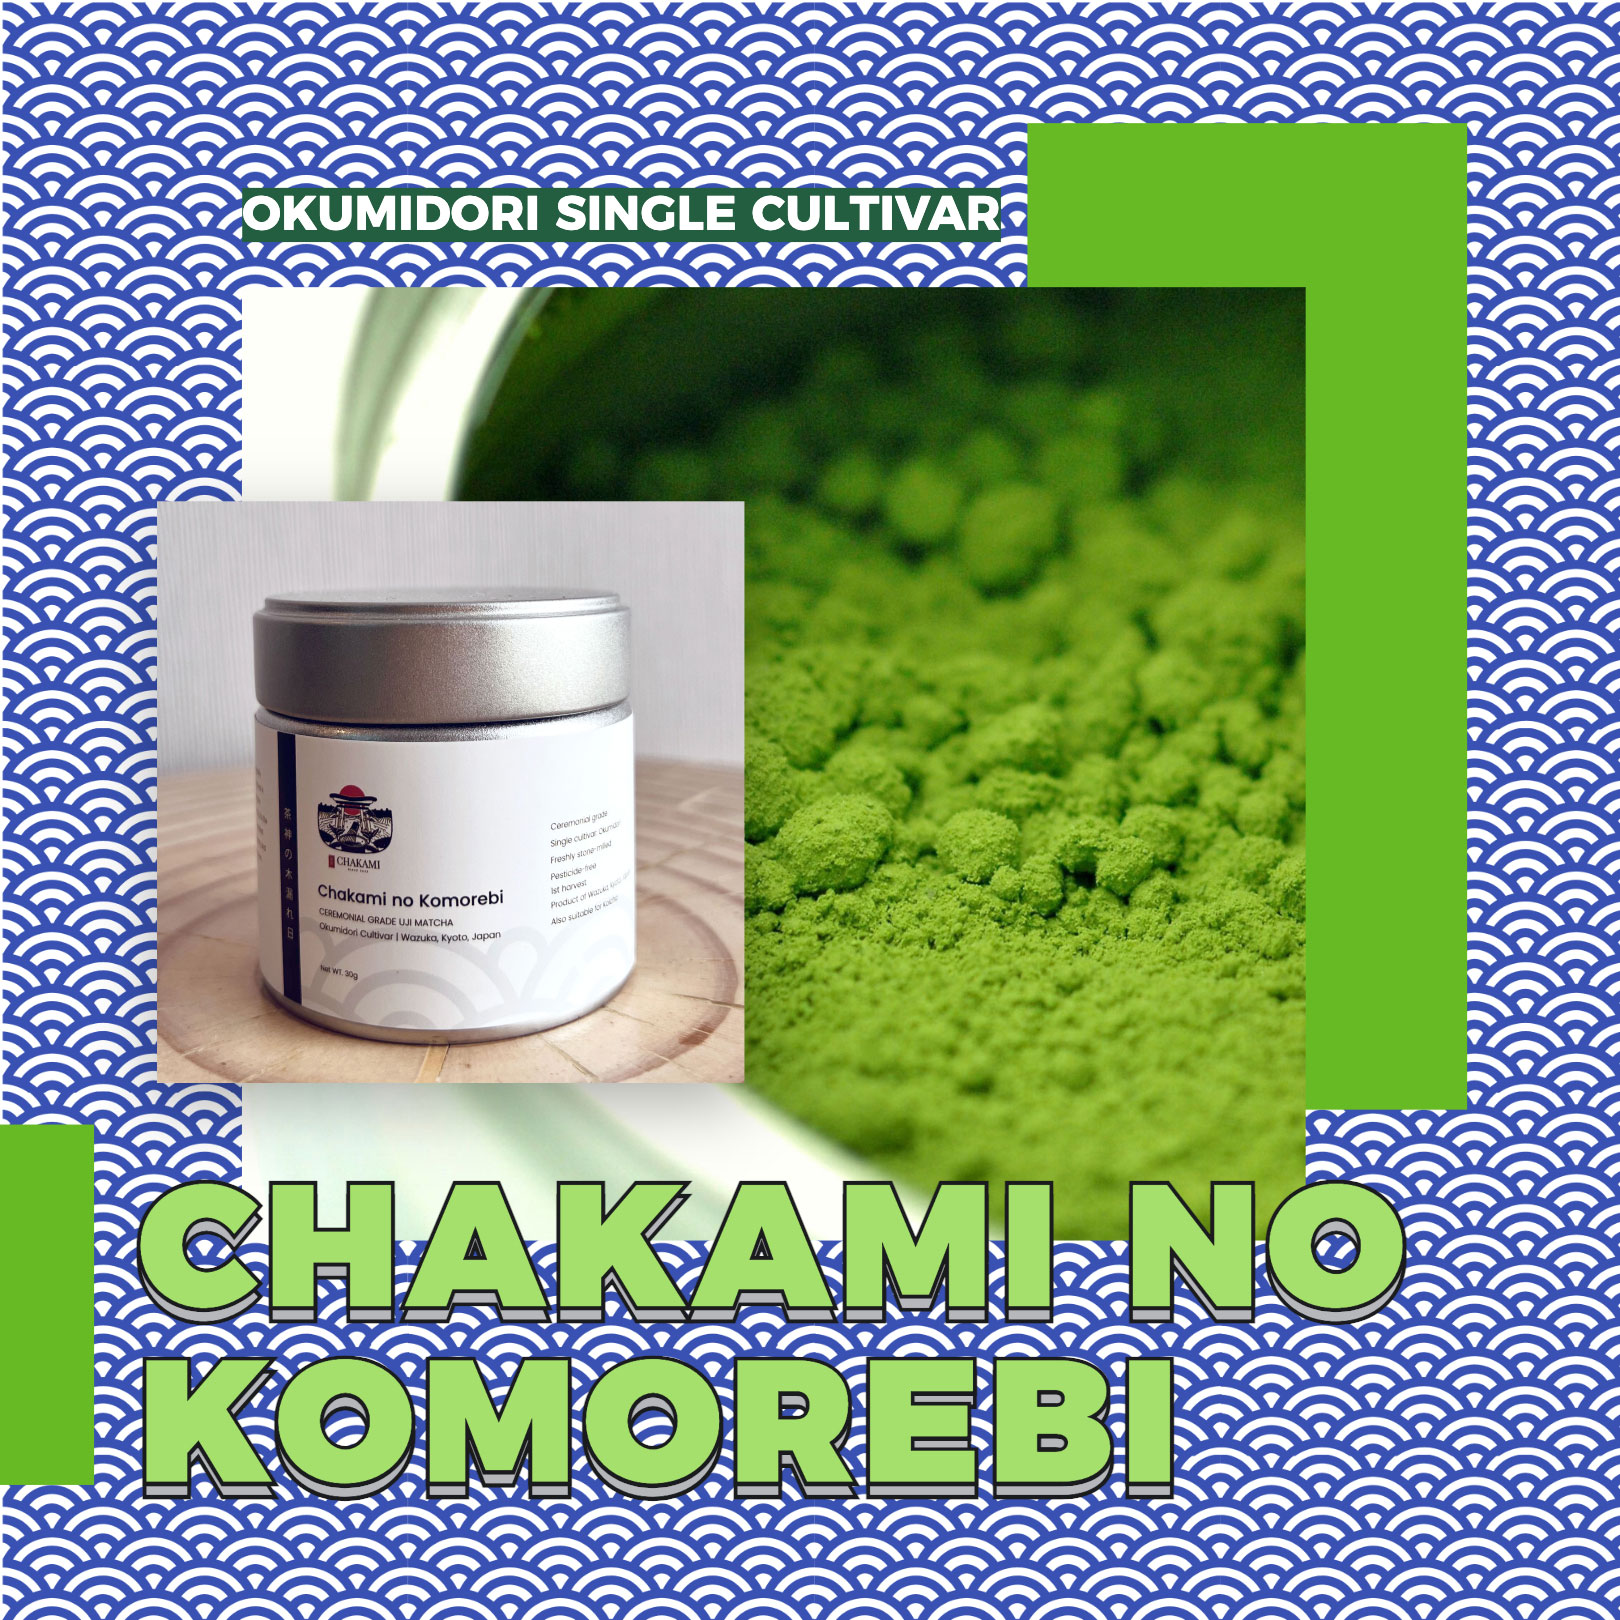 Bột Matcha Uji Nhật Bản - Chakami no Komorebi (Giống trà Okumidori) | 30g, 100g | Ceremonial Grade | Thu hoạch tại Kyoto, Nhật Bản